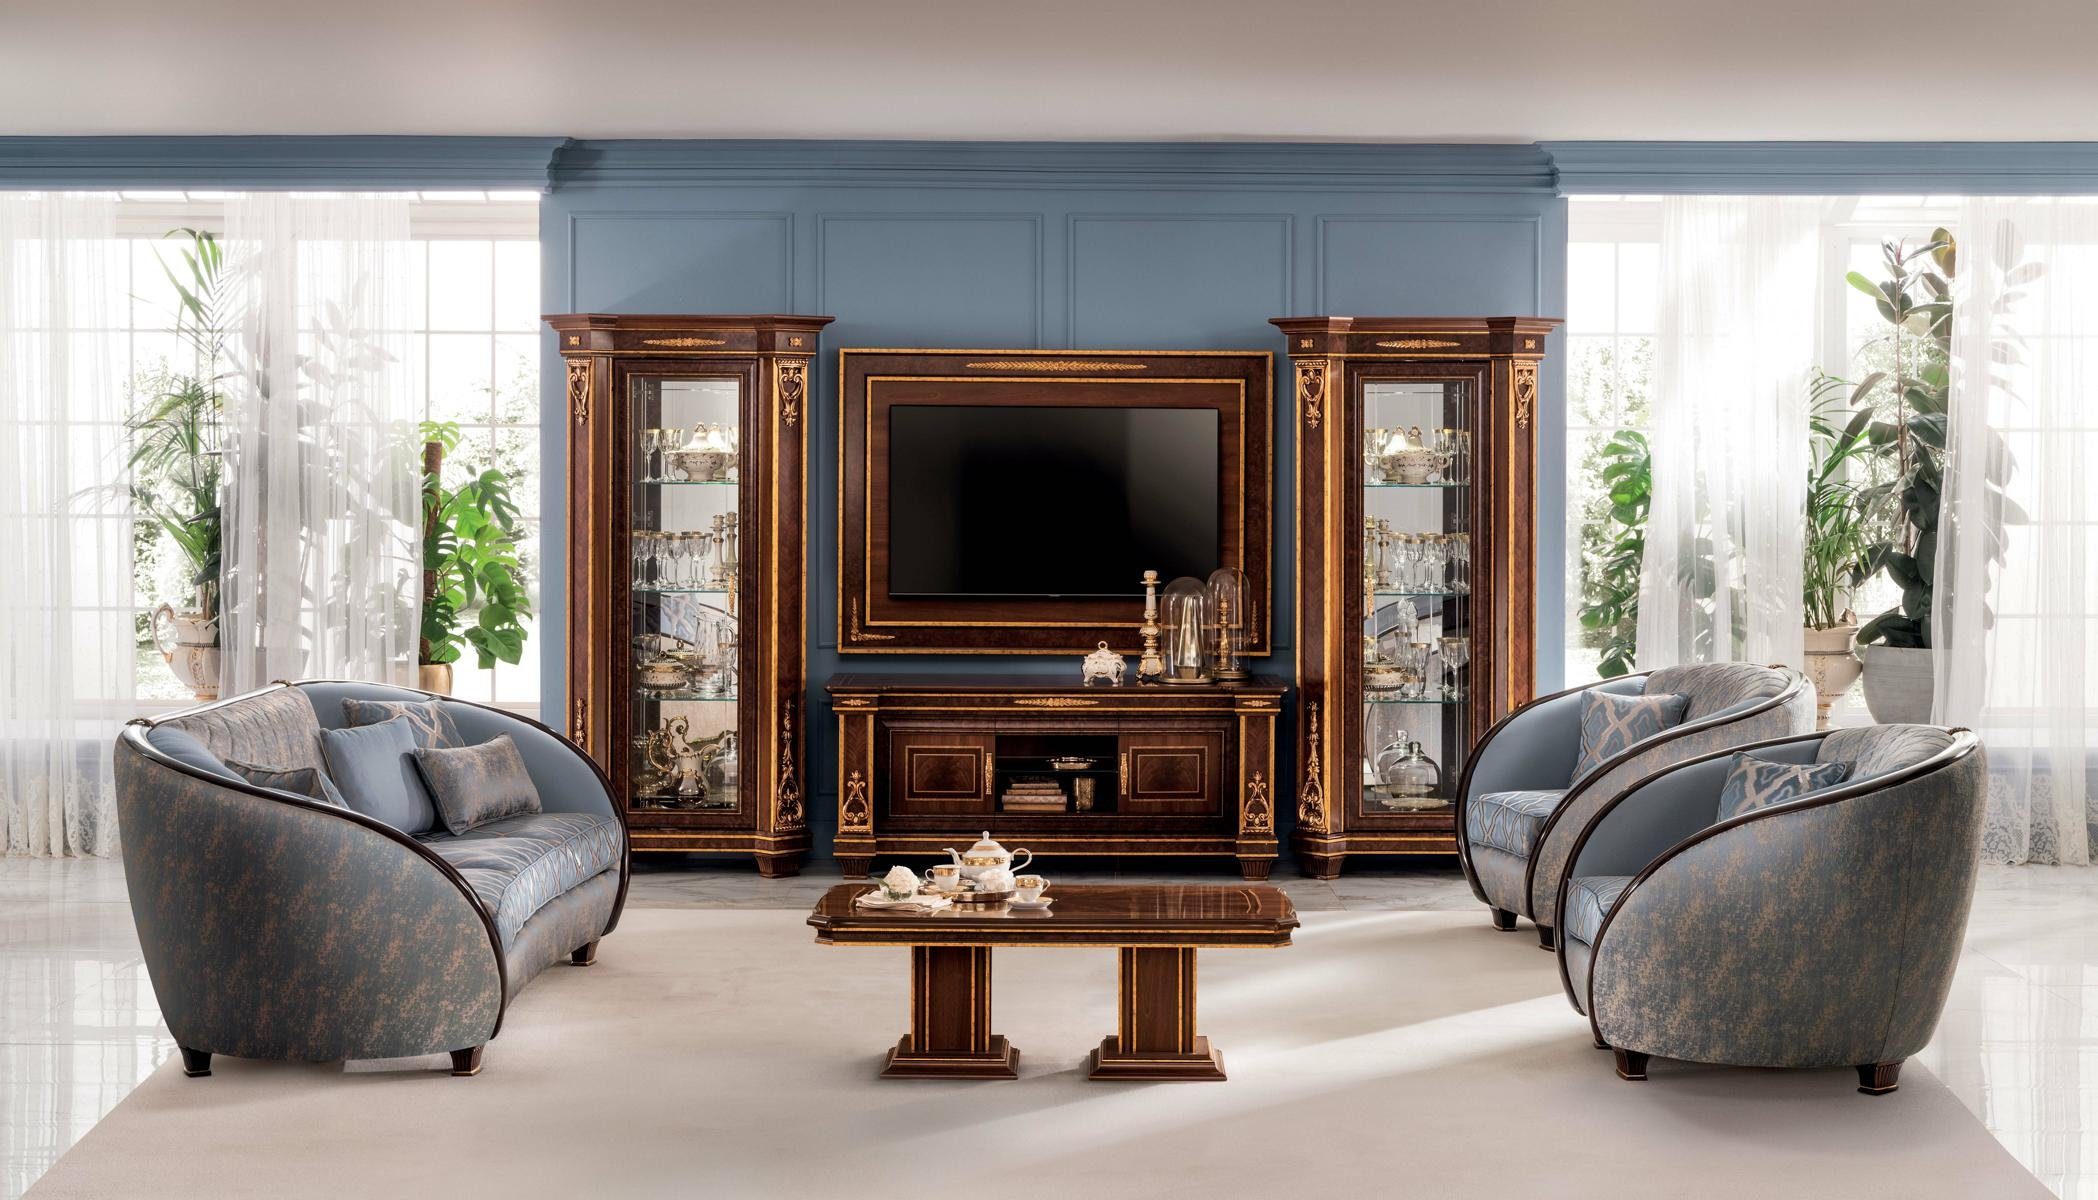 Sofagarnitur 3+2 Sofa Wohnzimmer-Set, Klasse Möbel arredoclassic™ Neu Couch Italienische Luxus JVmoebel